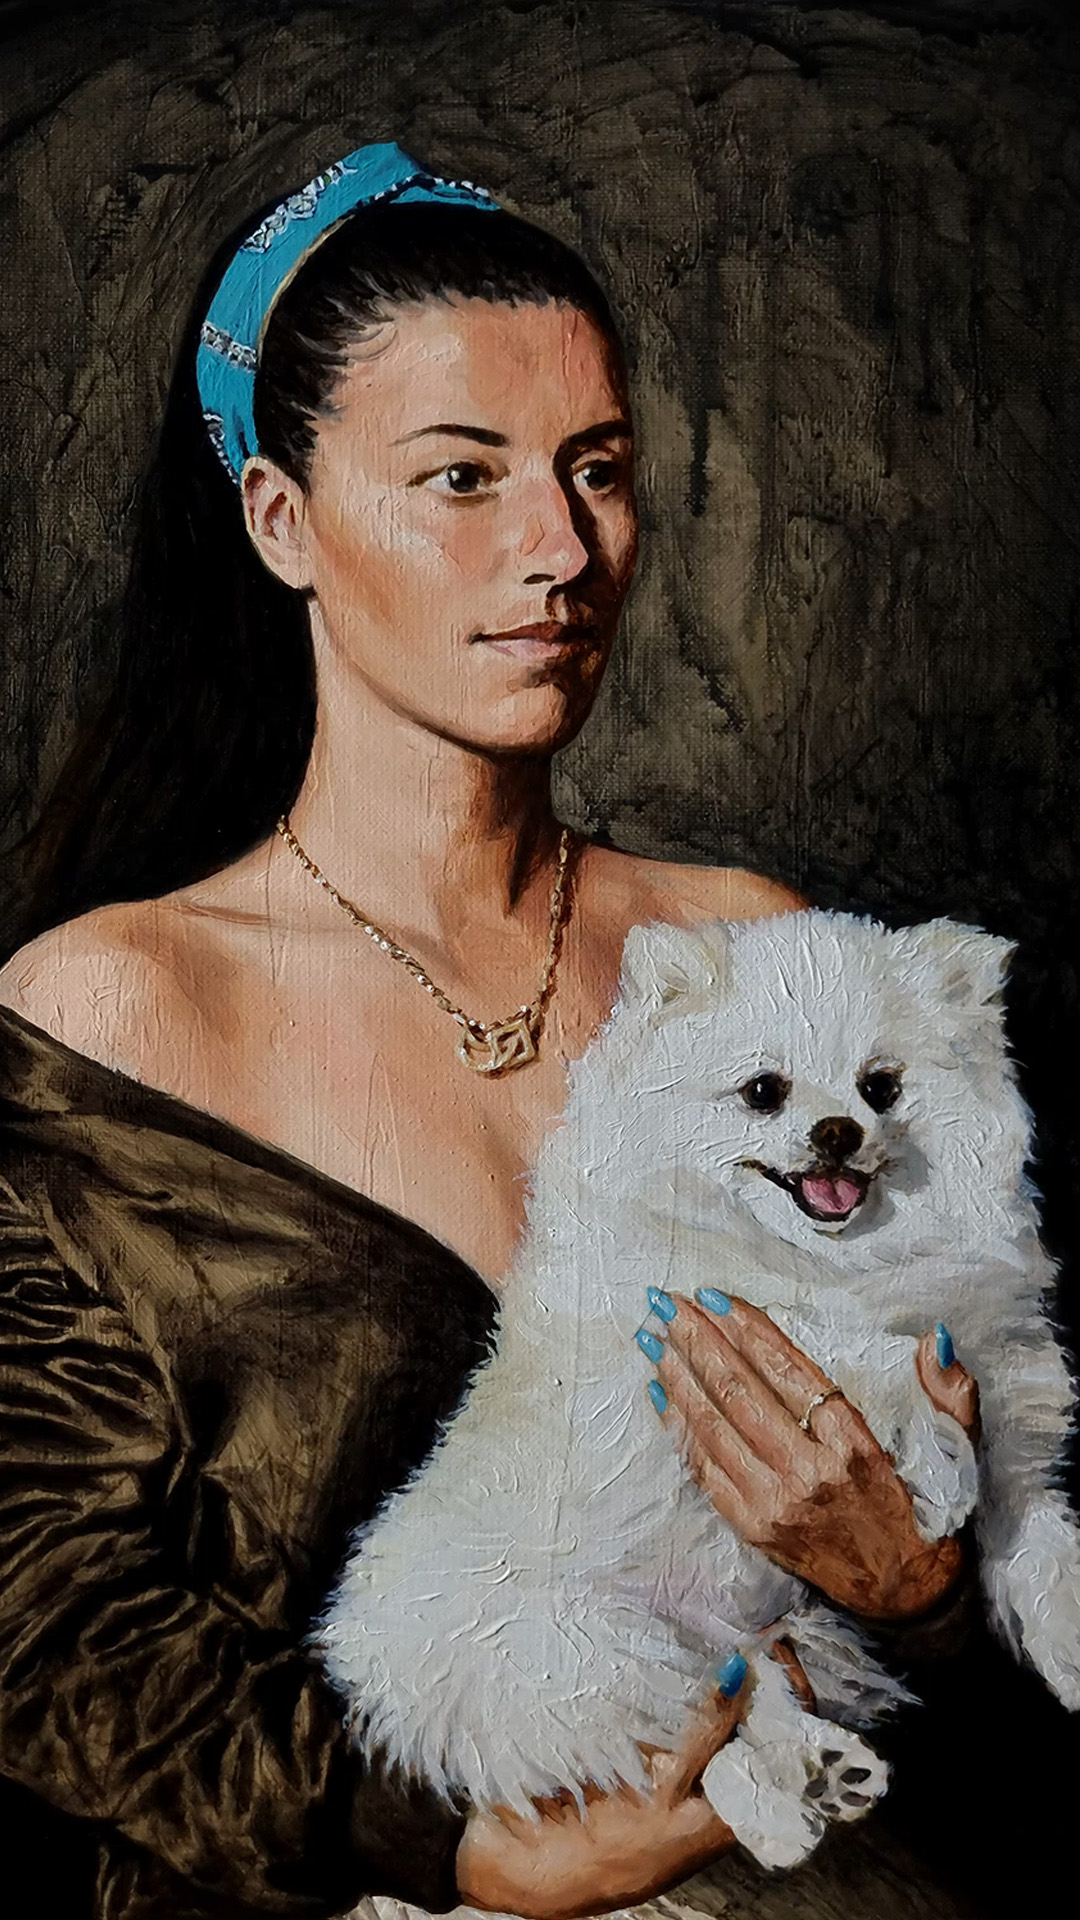 Lady with Pomeranian